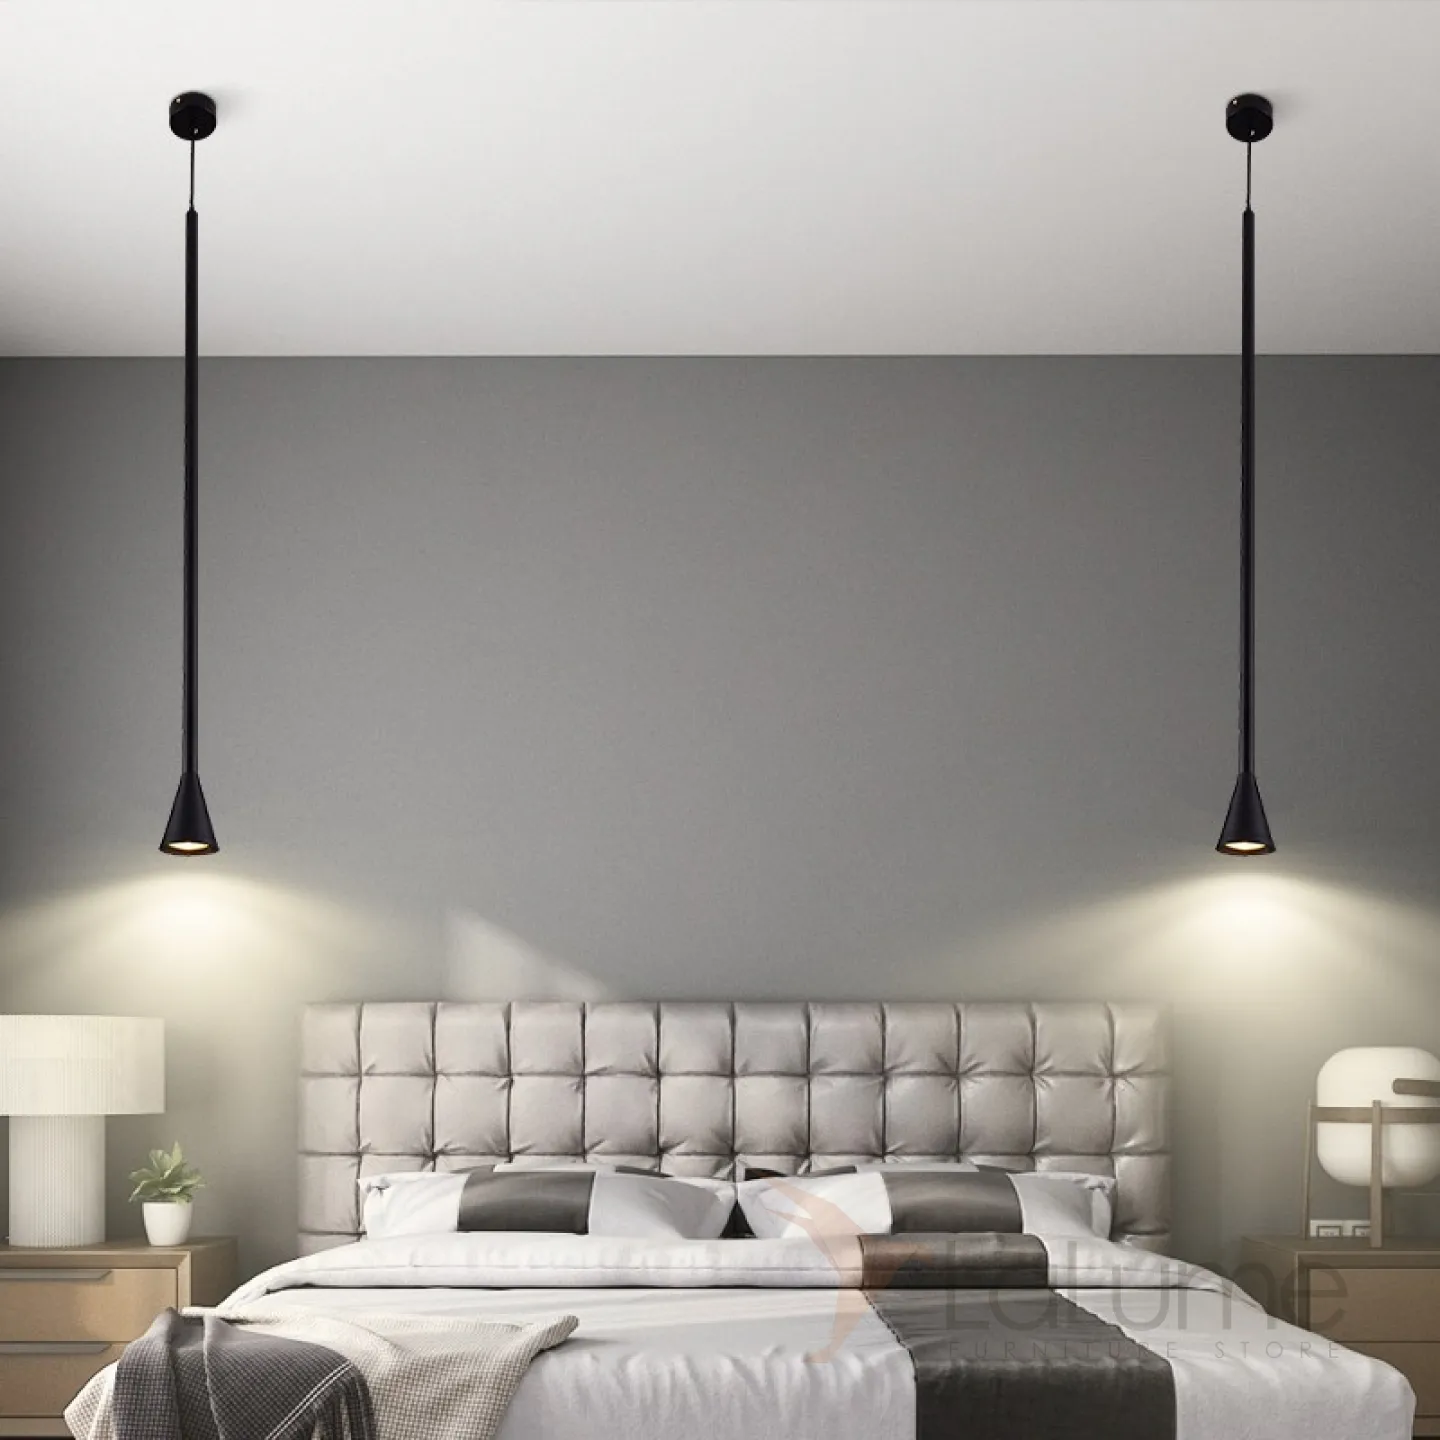 плоские светильники на стену над кроватью